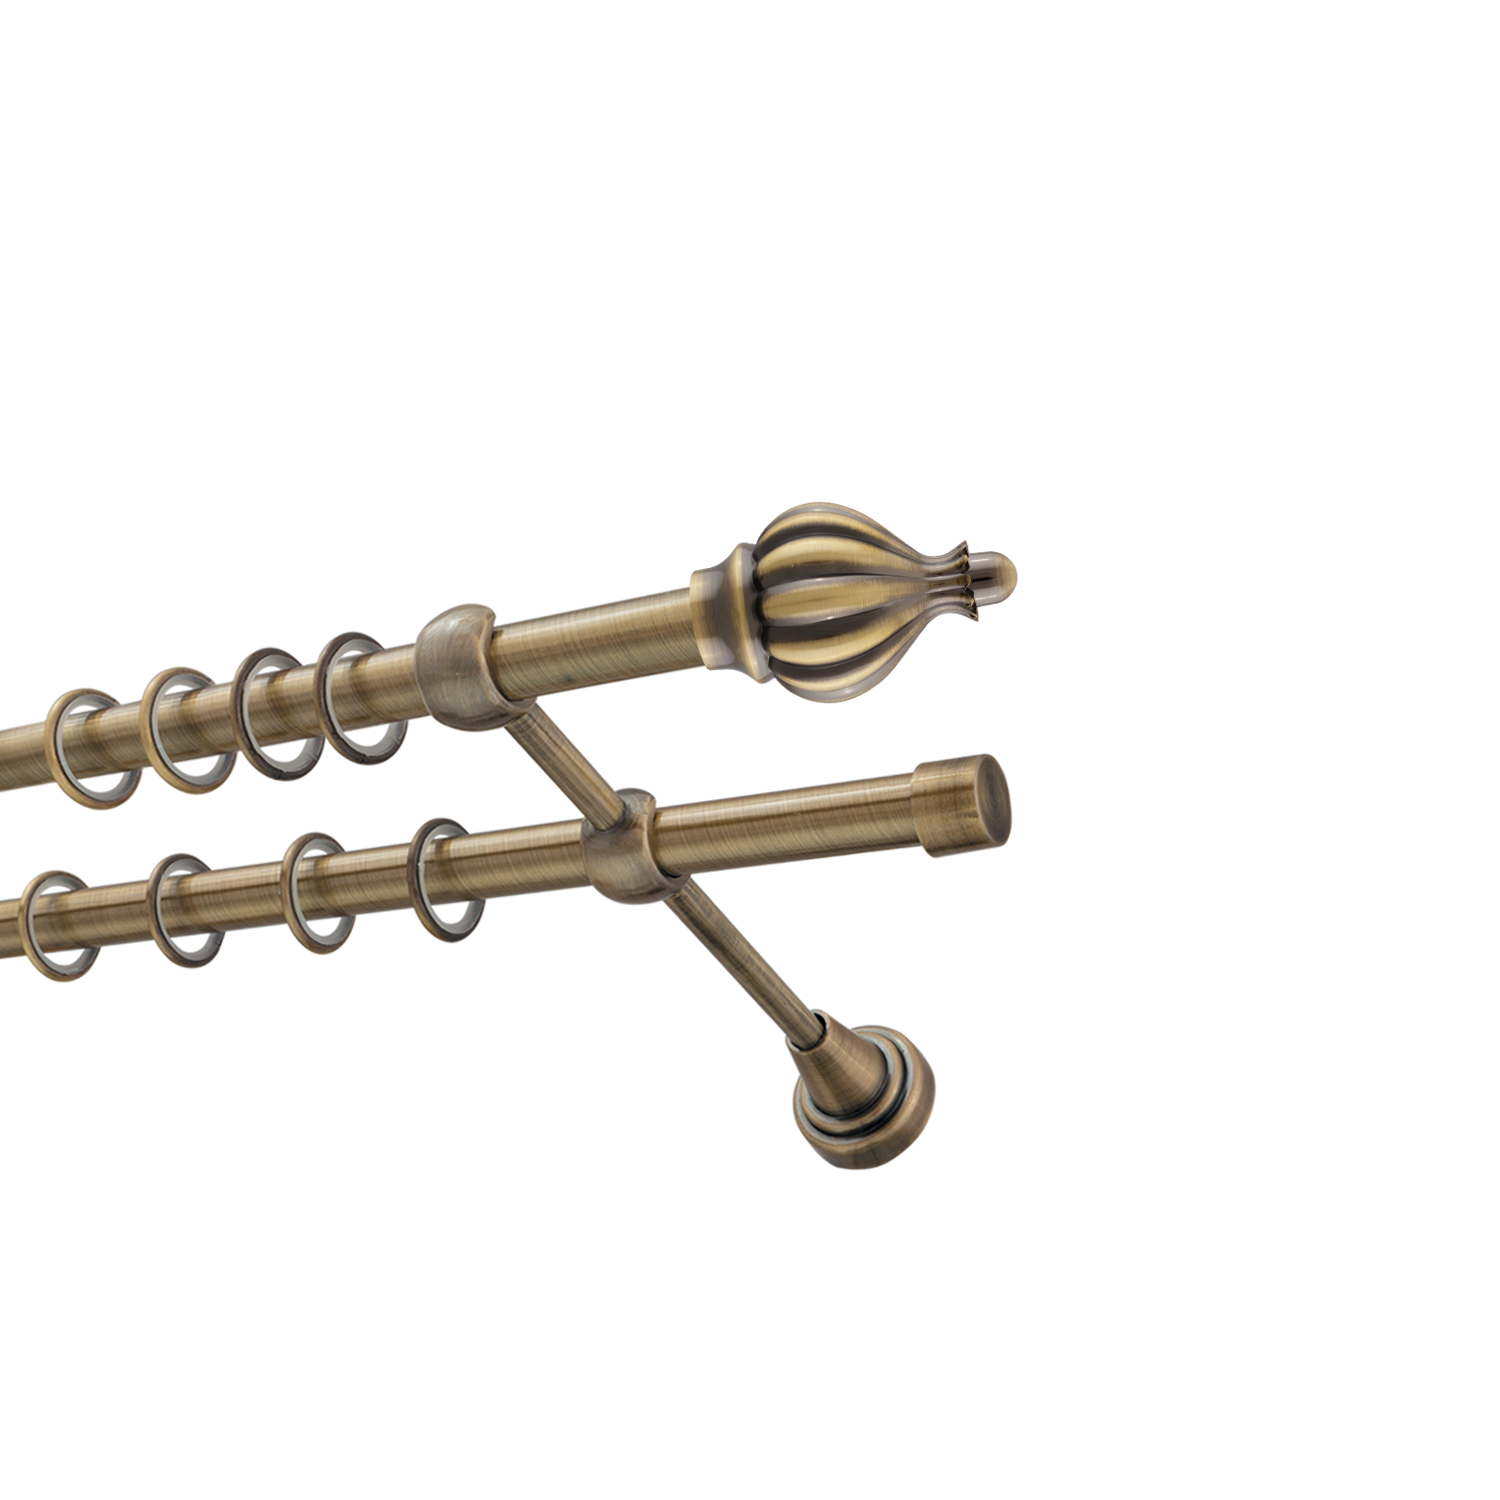 Металлический карниз для штор Афродита, двухрядный 16/16 мм, бронза, гладкая штанга, длина 160 см - фото Wikidecor.ru